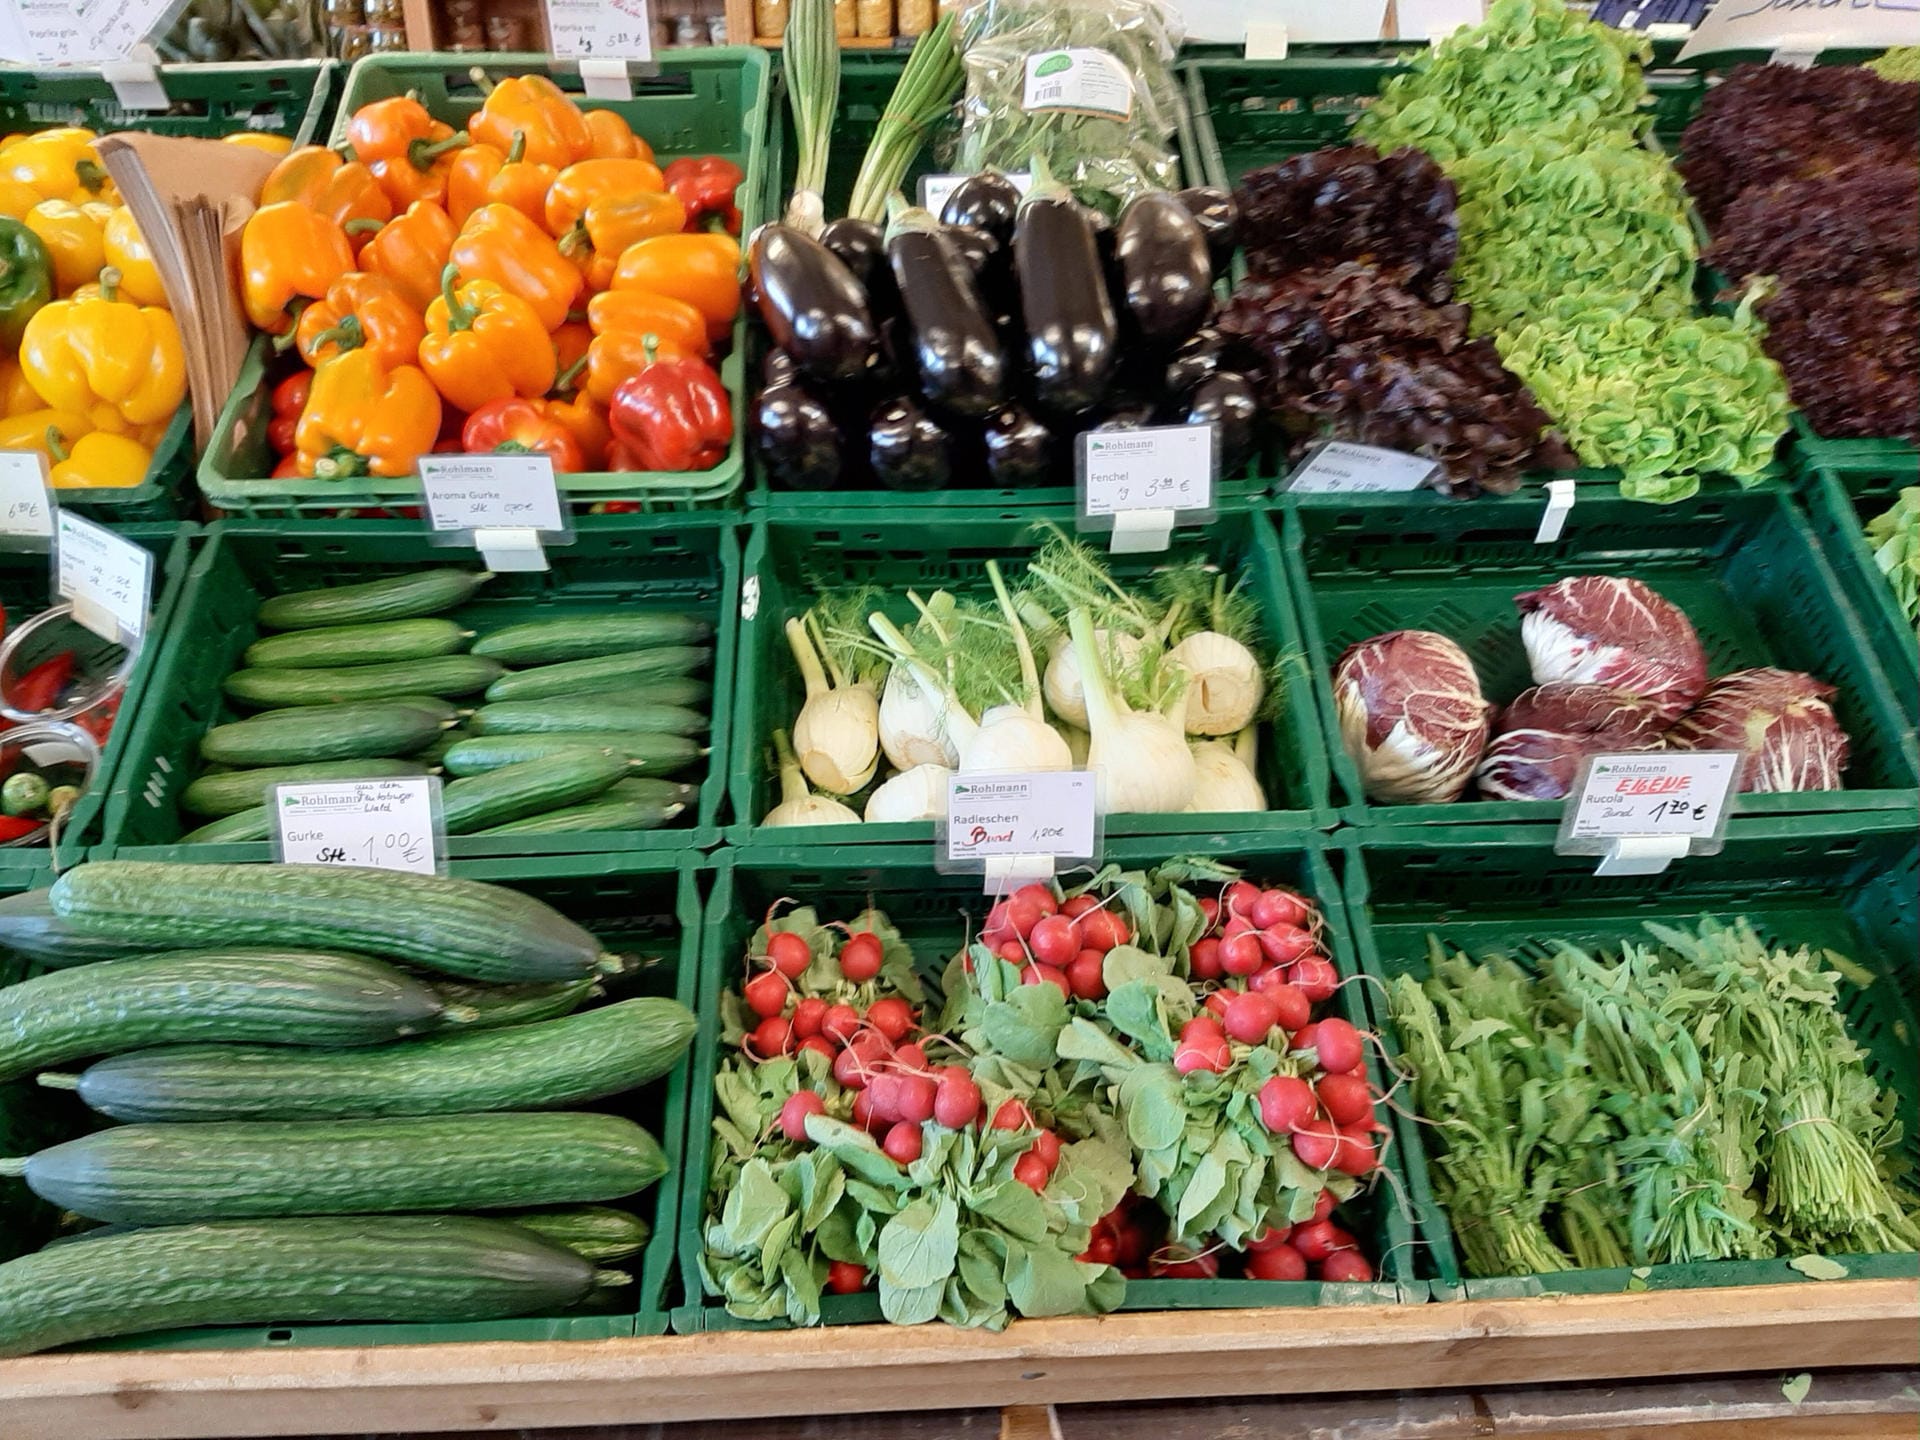 2020 testeten die ersten Supermärkte essbare, pflanzliche Verpackungen aus natürlichem Zucker und pflanzlicher Zellulose.